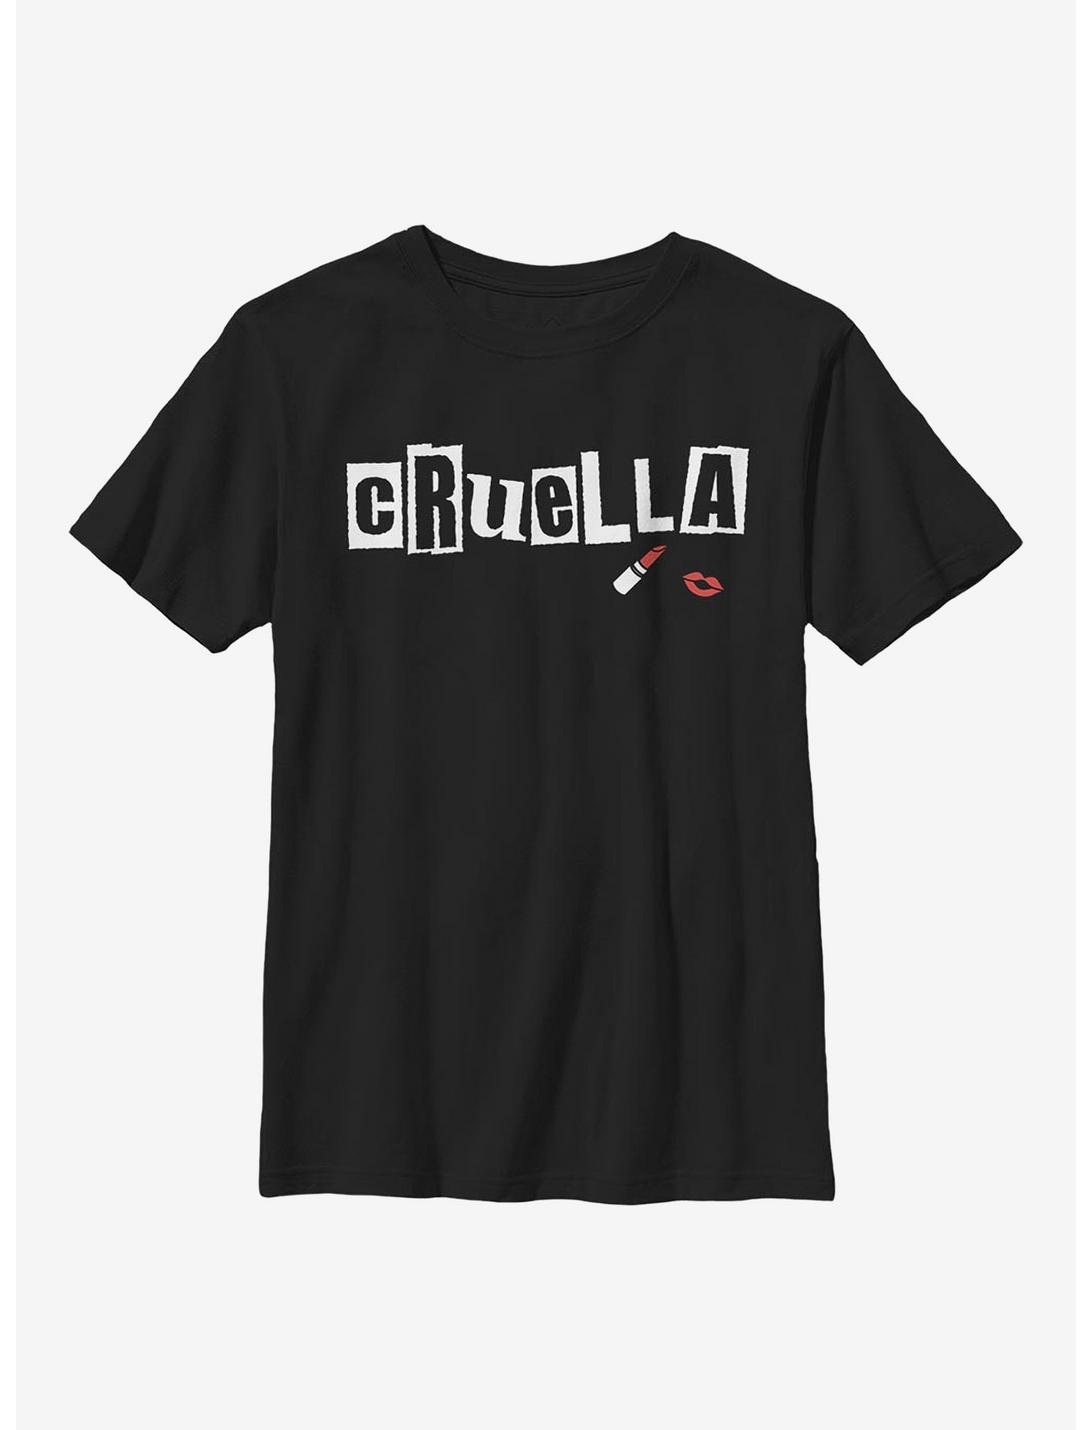 Disney Cruella Name Youth T-Shirt, BLACK, hi-res